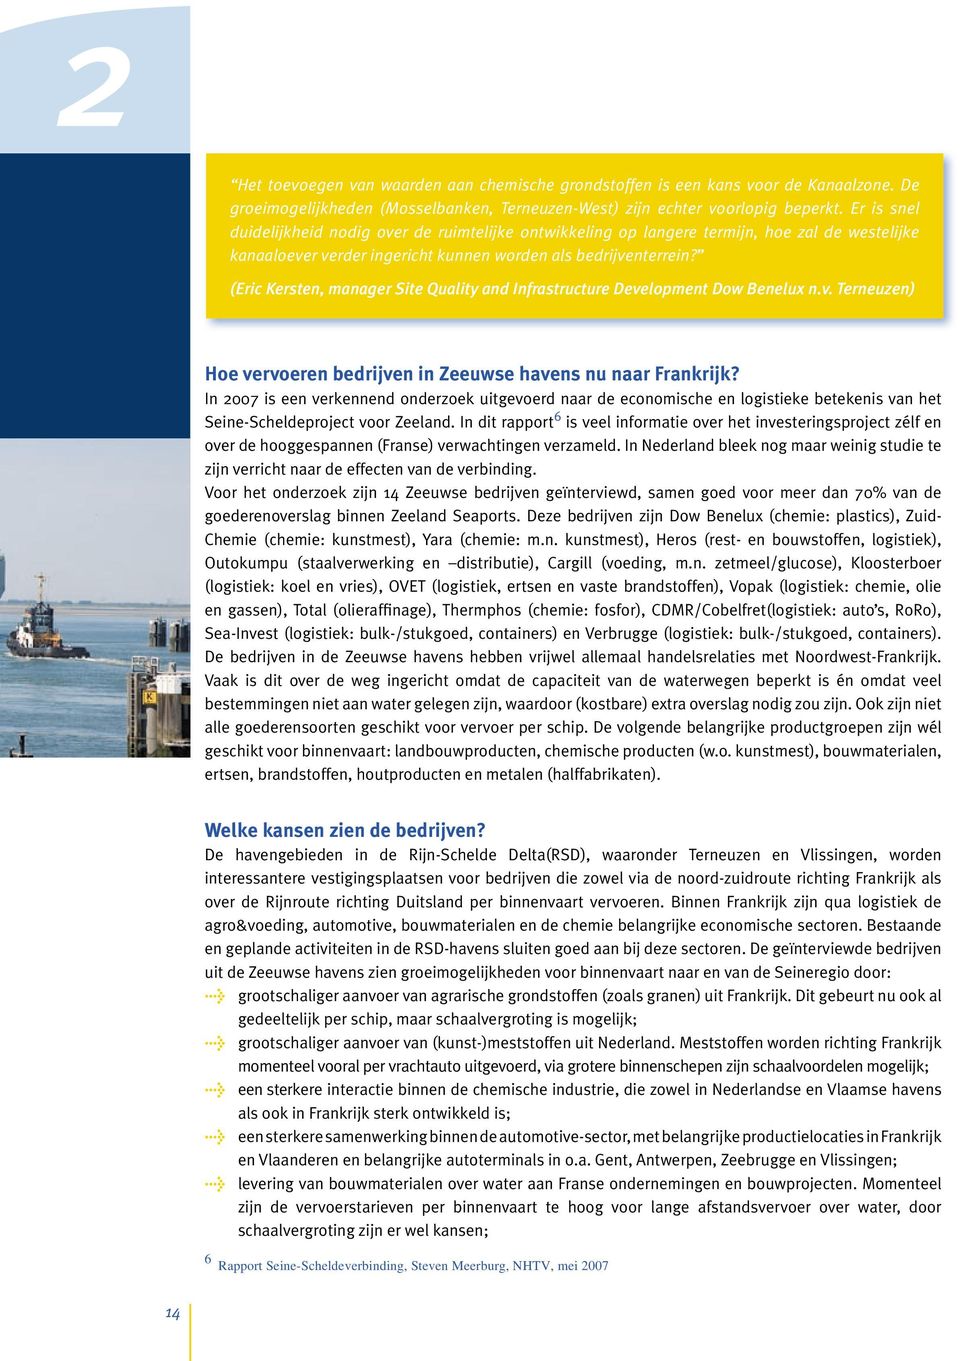 (Eric Kersten, manager Site Quality and Infrastructure Development Dow Benelux n.v. Terneuzen) Hoe vervoeren bedrijven in Zeeuwse havens nu naar Frankrijk?